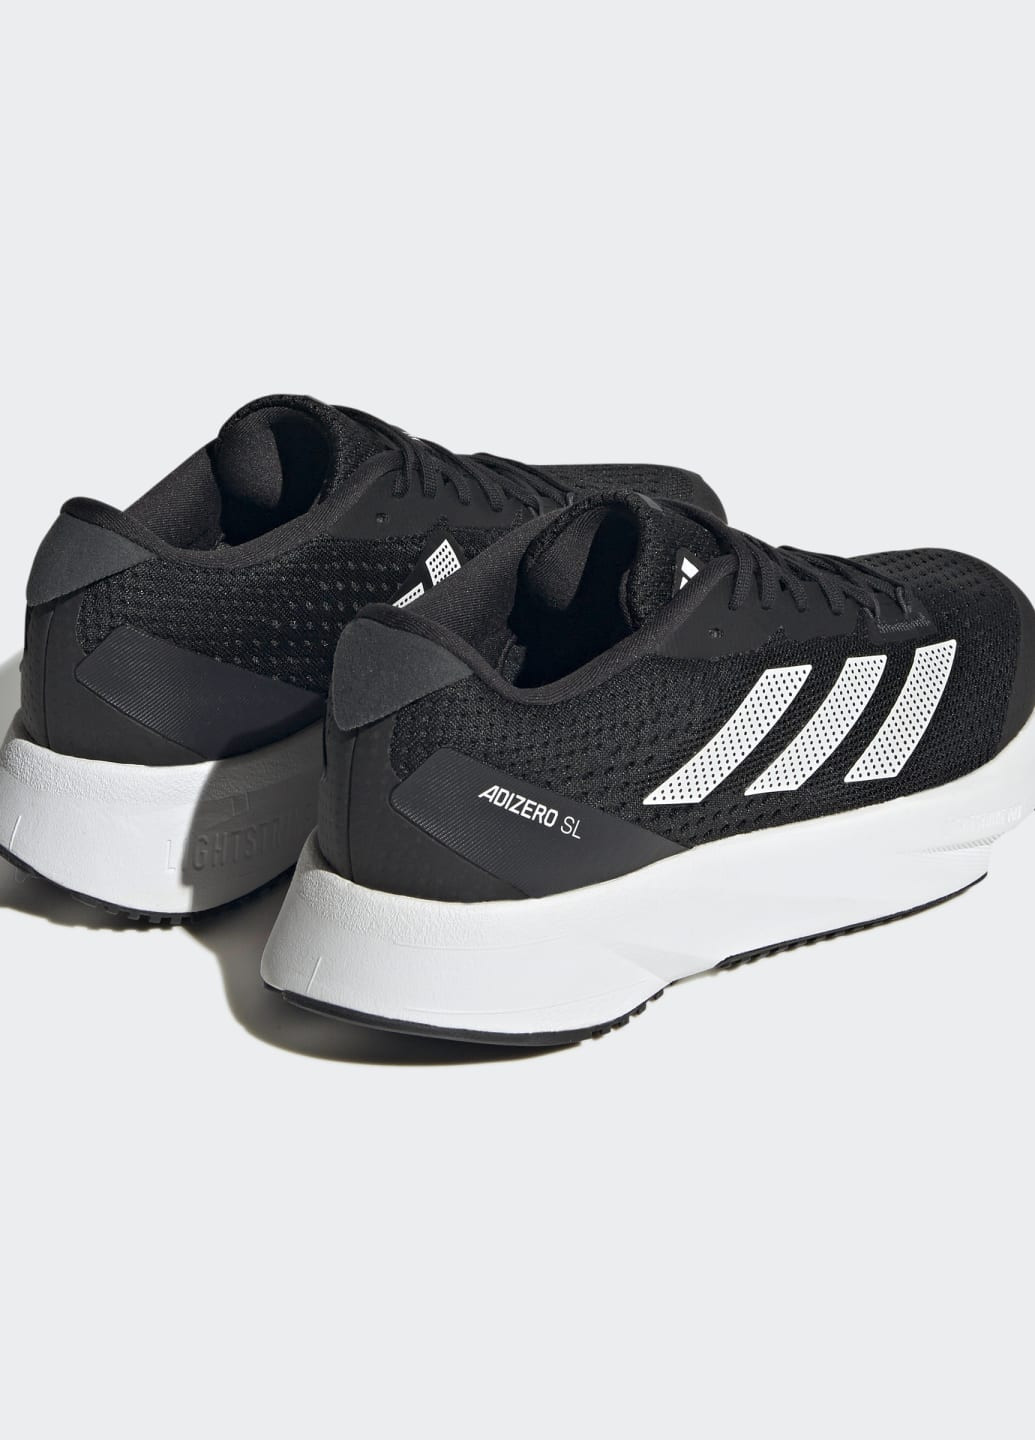 Черные всесезонные кроссовки adizero sl adidas